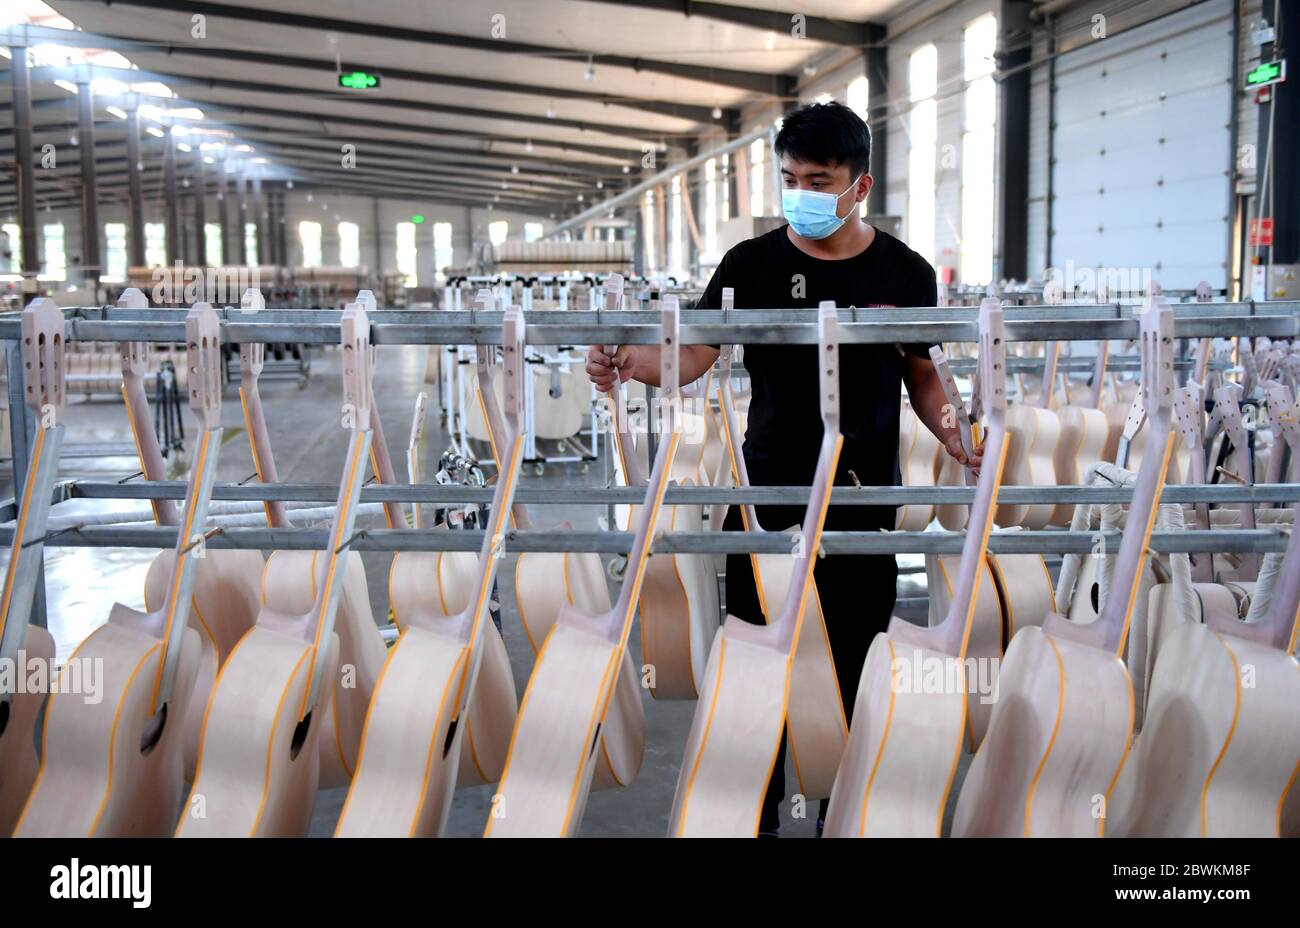 Hengshui, Chinas Provinz Hebei. Juni 2020. Ein Arbeiter überprüft halbfertige Gitarren in einer Musikinstrumentenfabrik im Wuqiang Bezirk von Hengshui, Nordchinesische Provinz Hebei, 2. Juni 2020. Die Behörden im Wuqiang County haben eine Initiative zur Armutsbekämpfung durchgeführt, die die lokale Musikinstrumentenindustrie dazu ermutigt, ländliche Bewohner, die unterhalb der aktuellen Armutsgrenze leben, einzustellen und ihnen dabei zu helfen, neue Karrieren zu beginnen. Kredit: Zhu Xudong/Xinhua/Alamy Live News Stockfoto